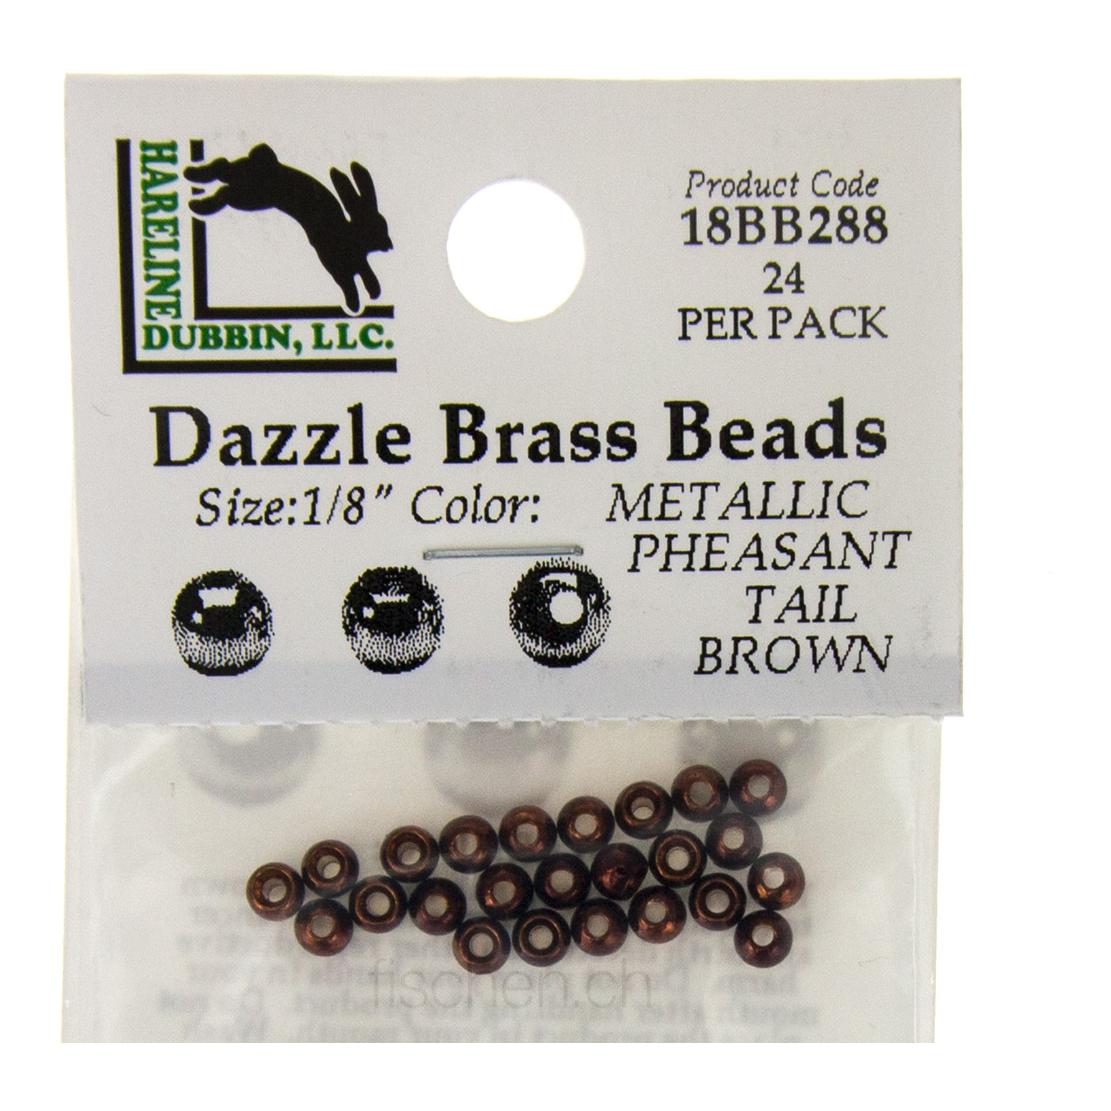 Image of Hareline Dubbin Dazzle Brass Beads - Metallic Pheasant Tail Brown - Messingköpfe bei fischen.ch